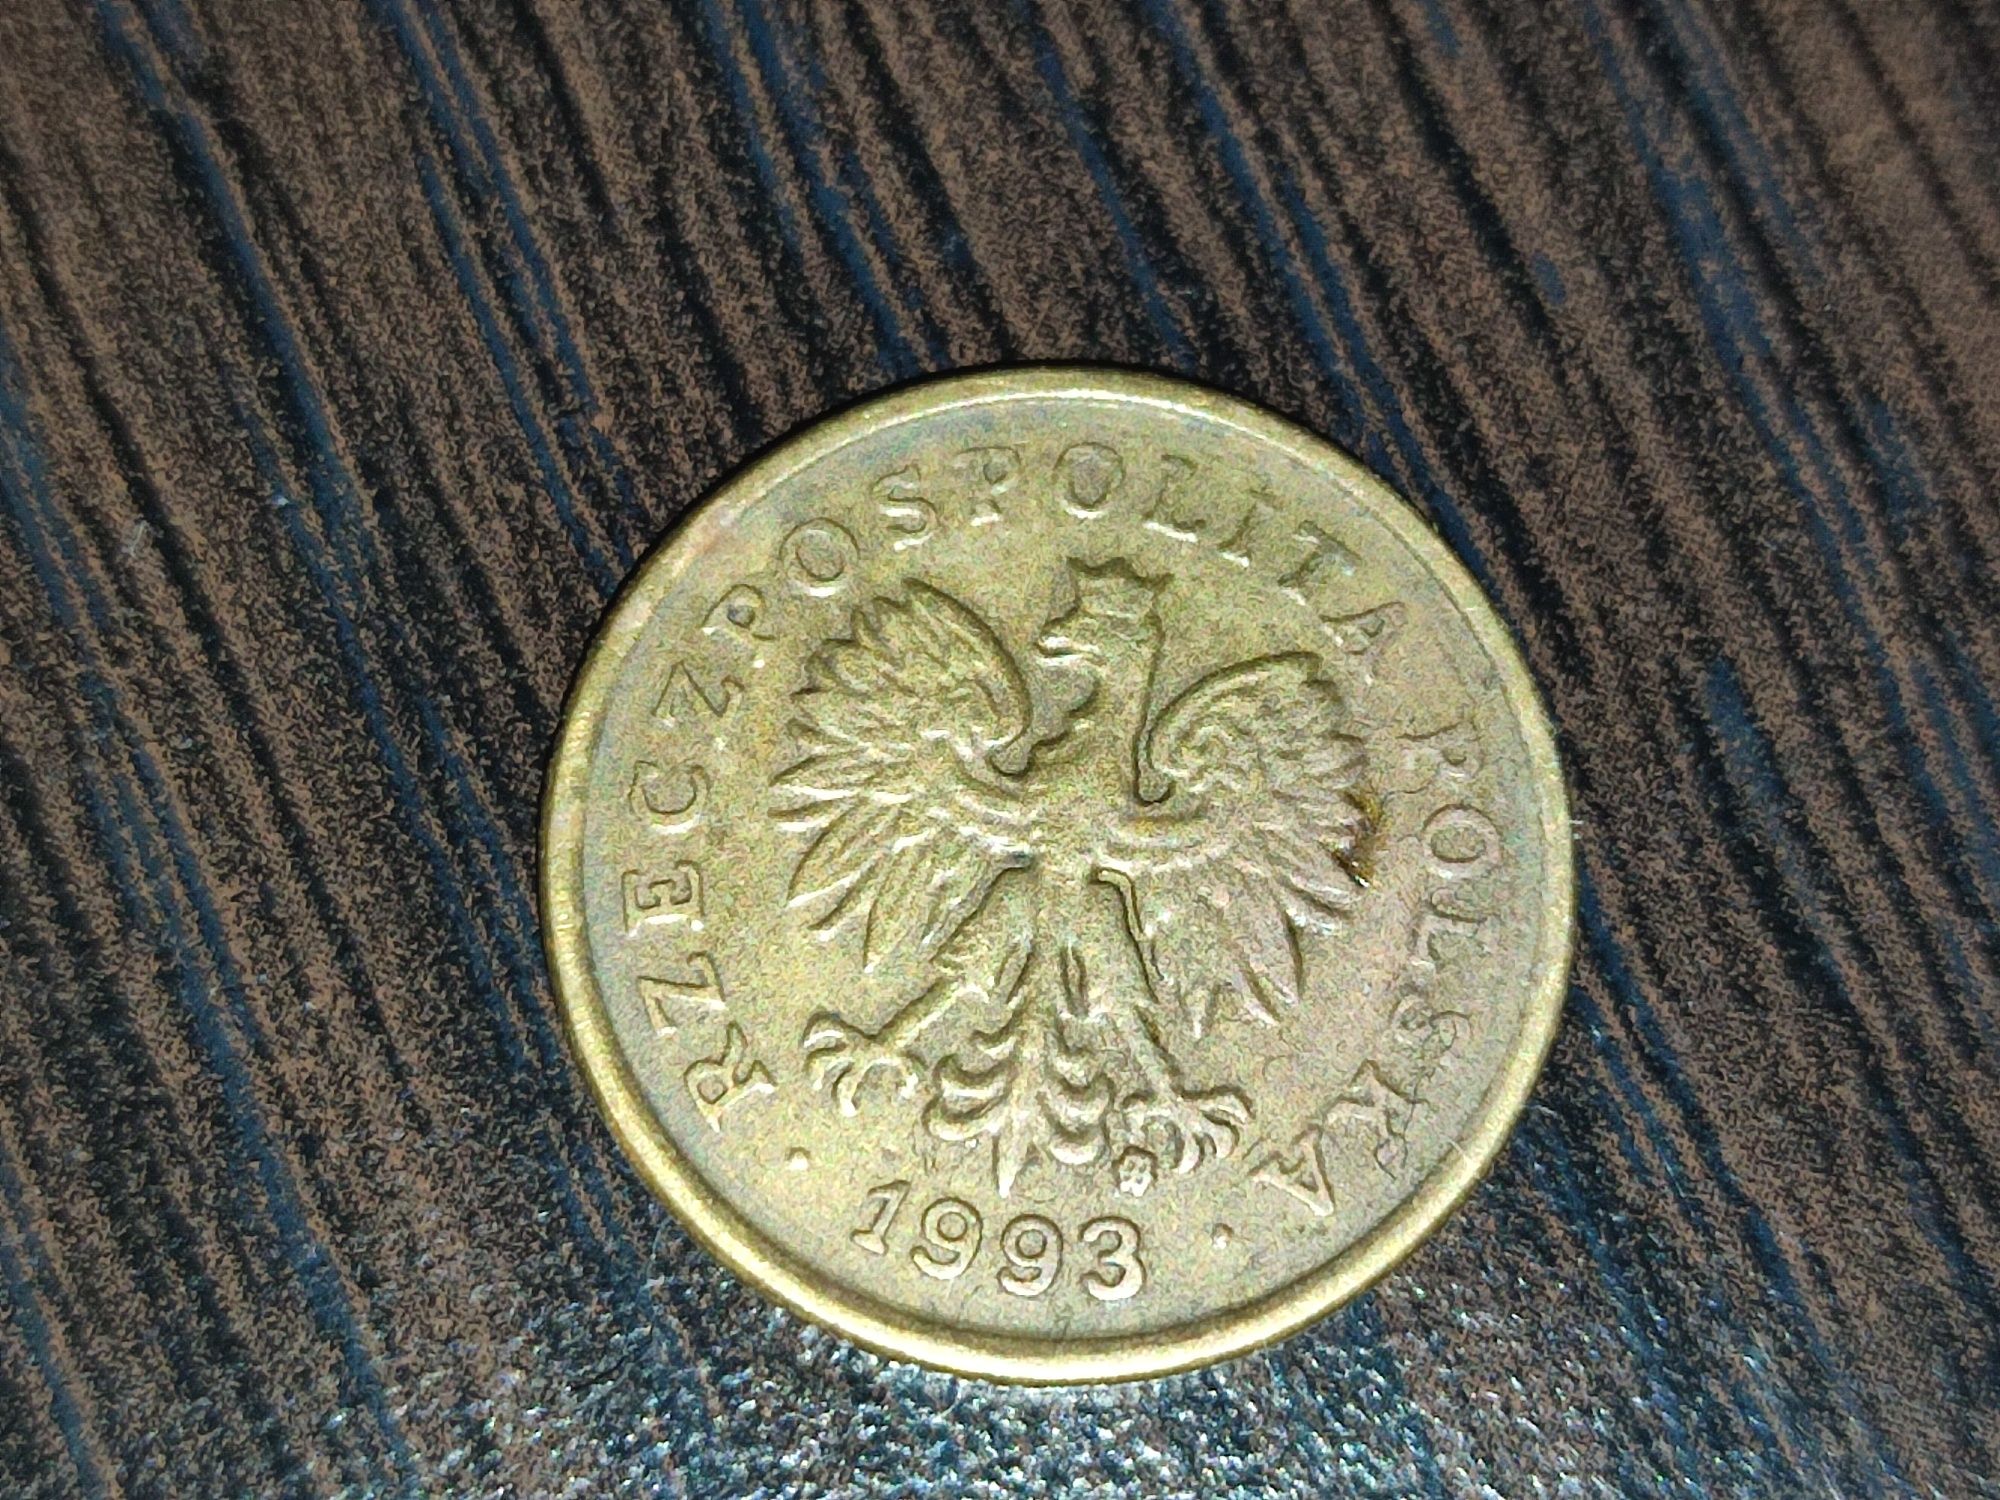 5 groszy 1993 Polska